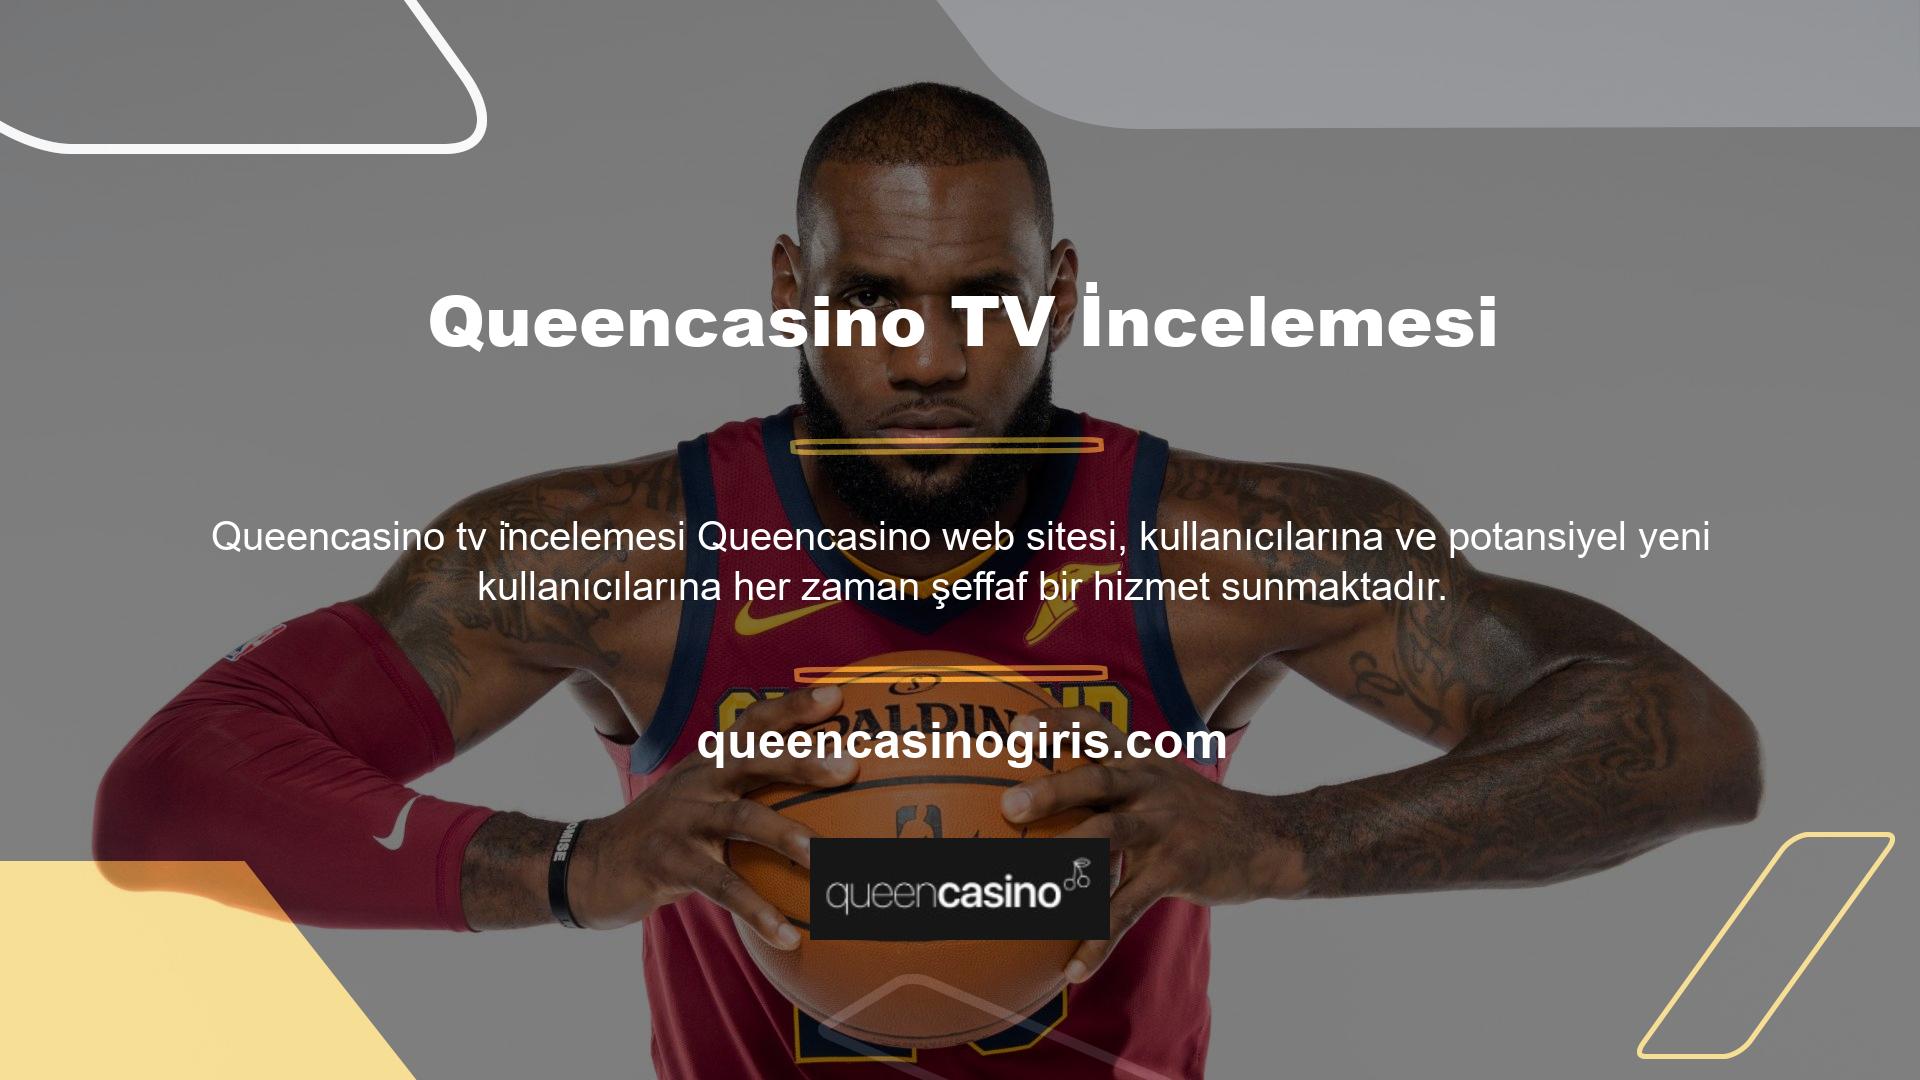 Bu nedenle Queencasino TV'nin tüm kullanıcı yorumları kamuya açıklanacaktır